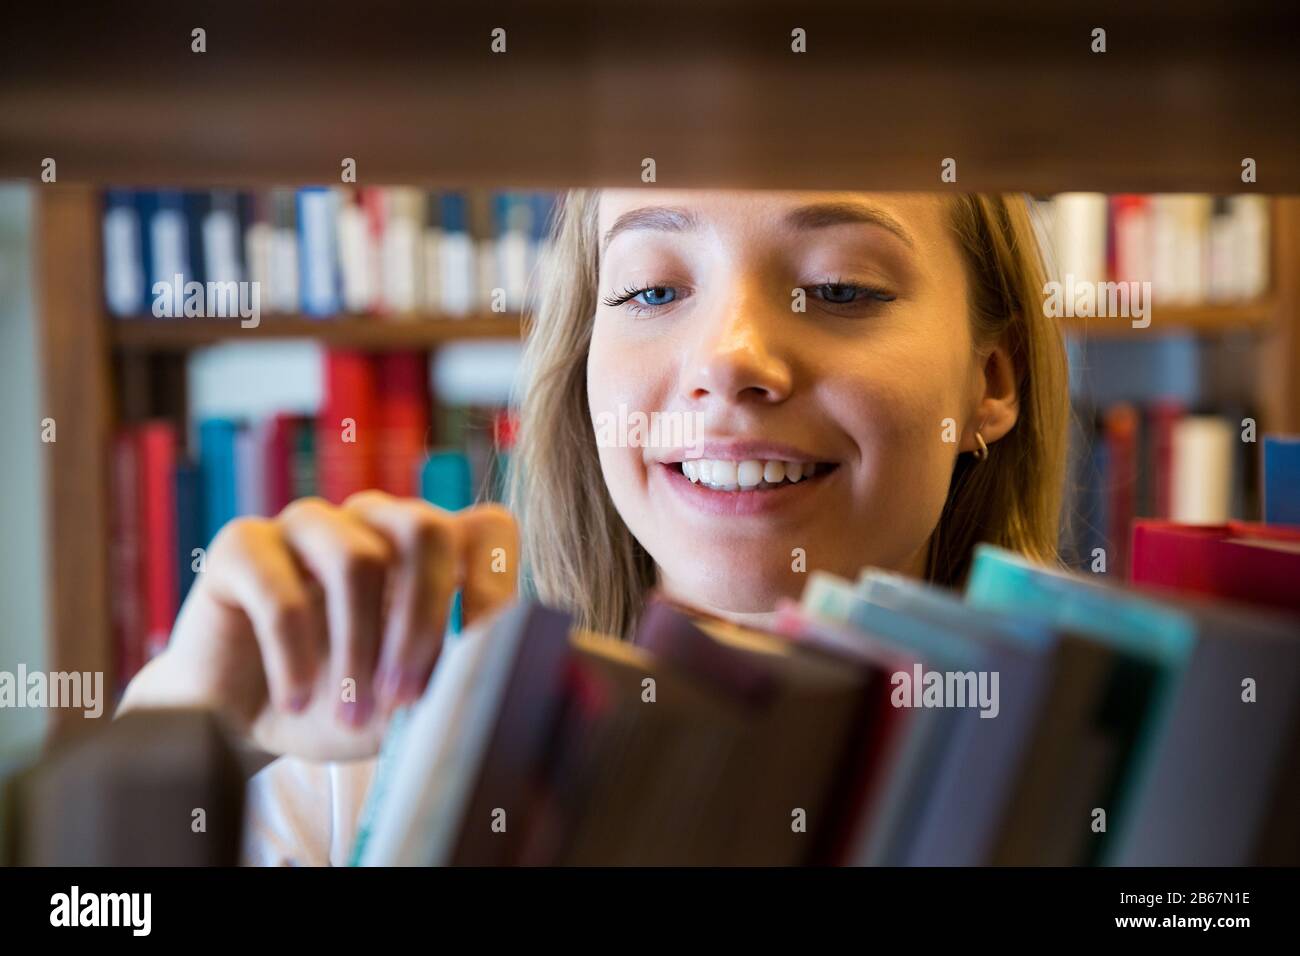 Jeune fille debout dans une ancienne bibliothèque traditionnelle à la bibliothèque, à la recherche de livres. Gros plan souriant étudiant recherche, étudier. Enseignement supérieur. Banque D'Images